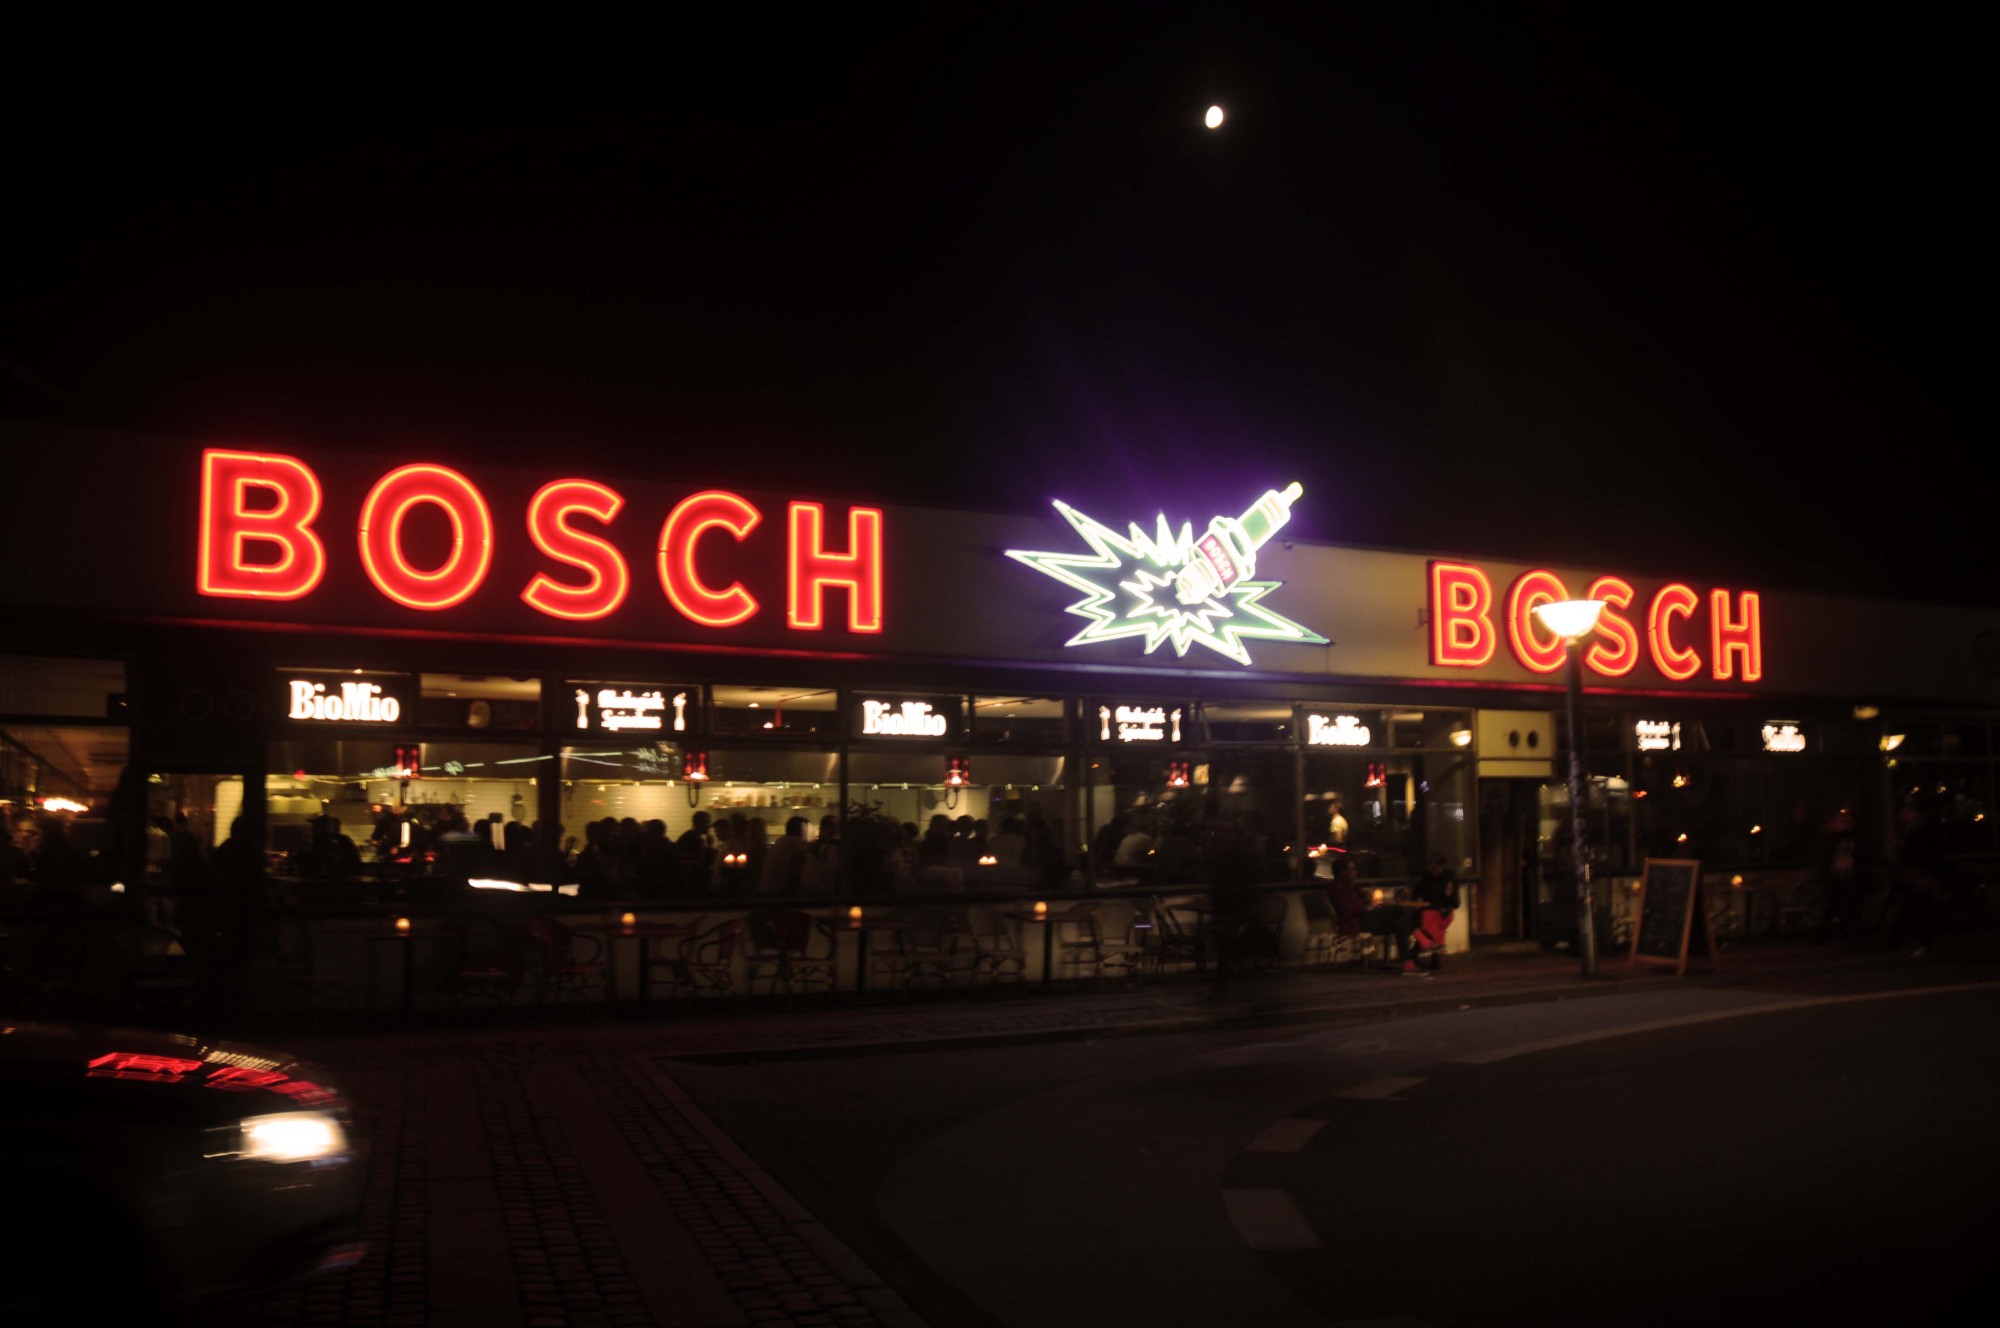 Boschbosch